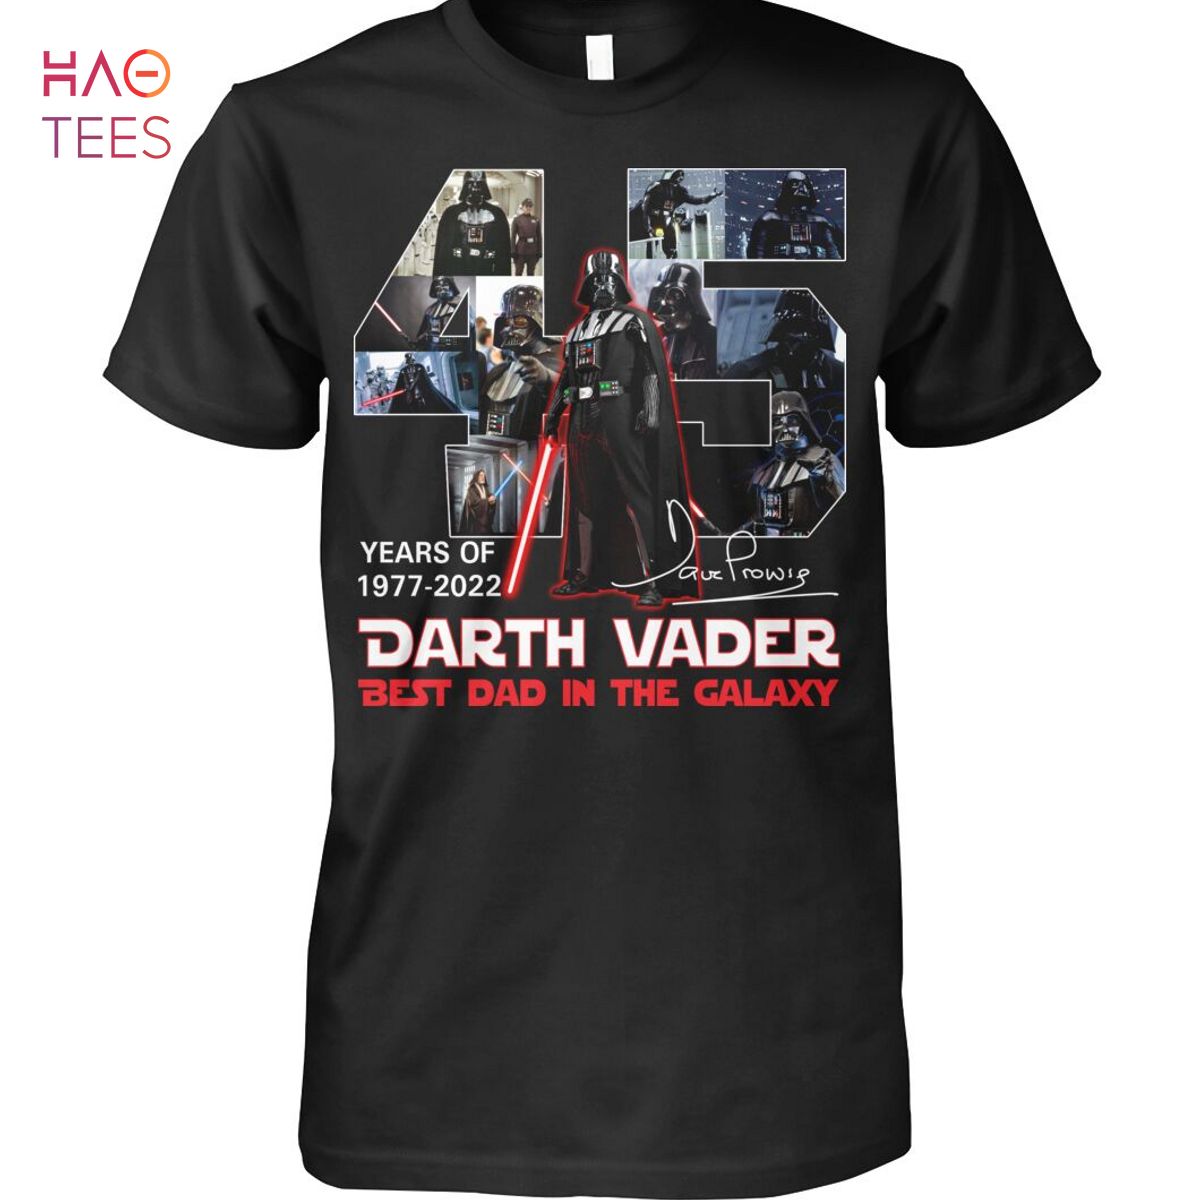 NEW 45 Years Of 1977-2022 Darth Vader Shirt